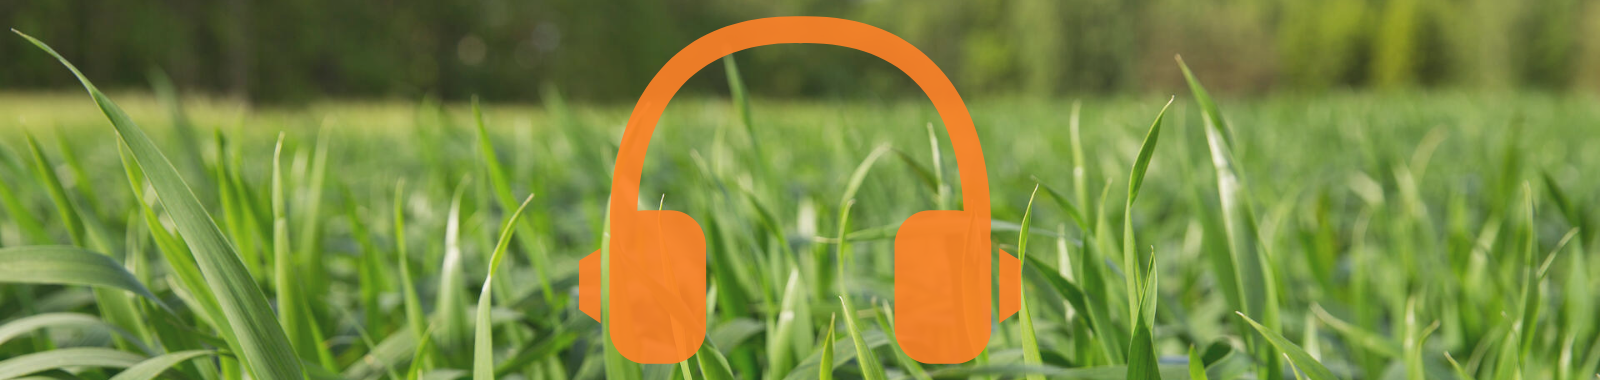 Podcast plaatje met koeien met headphones